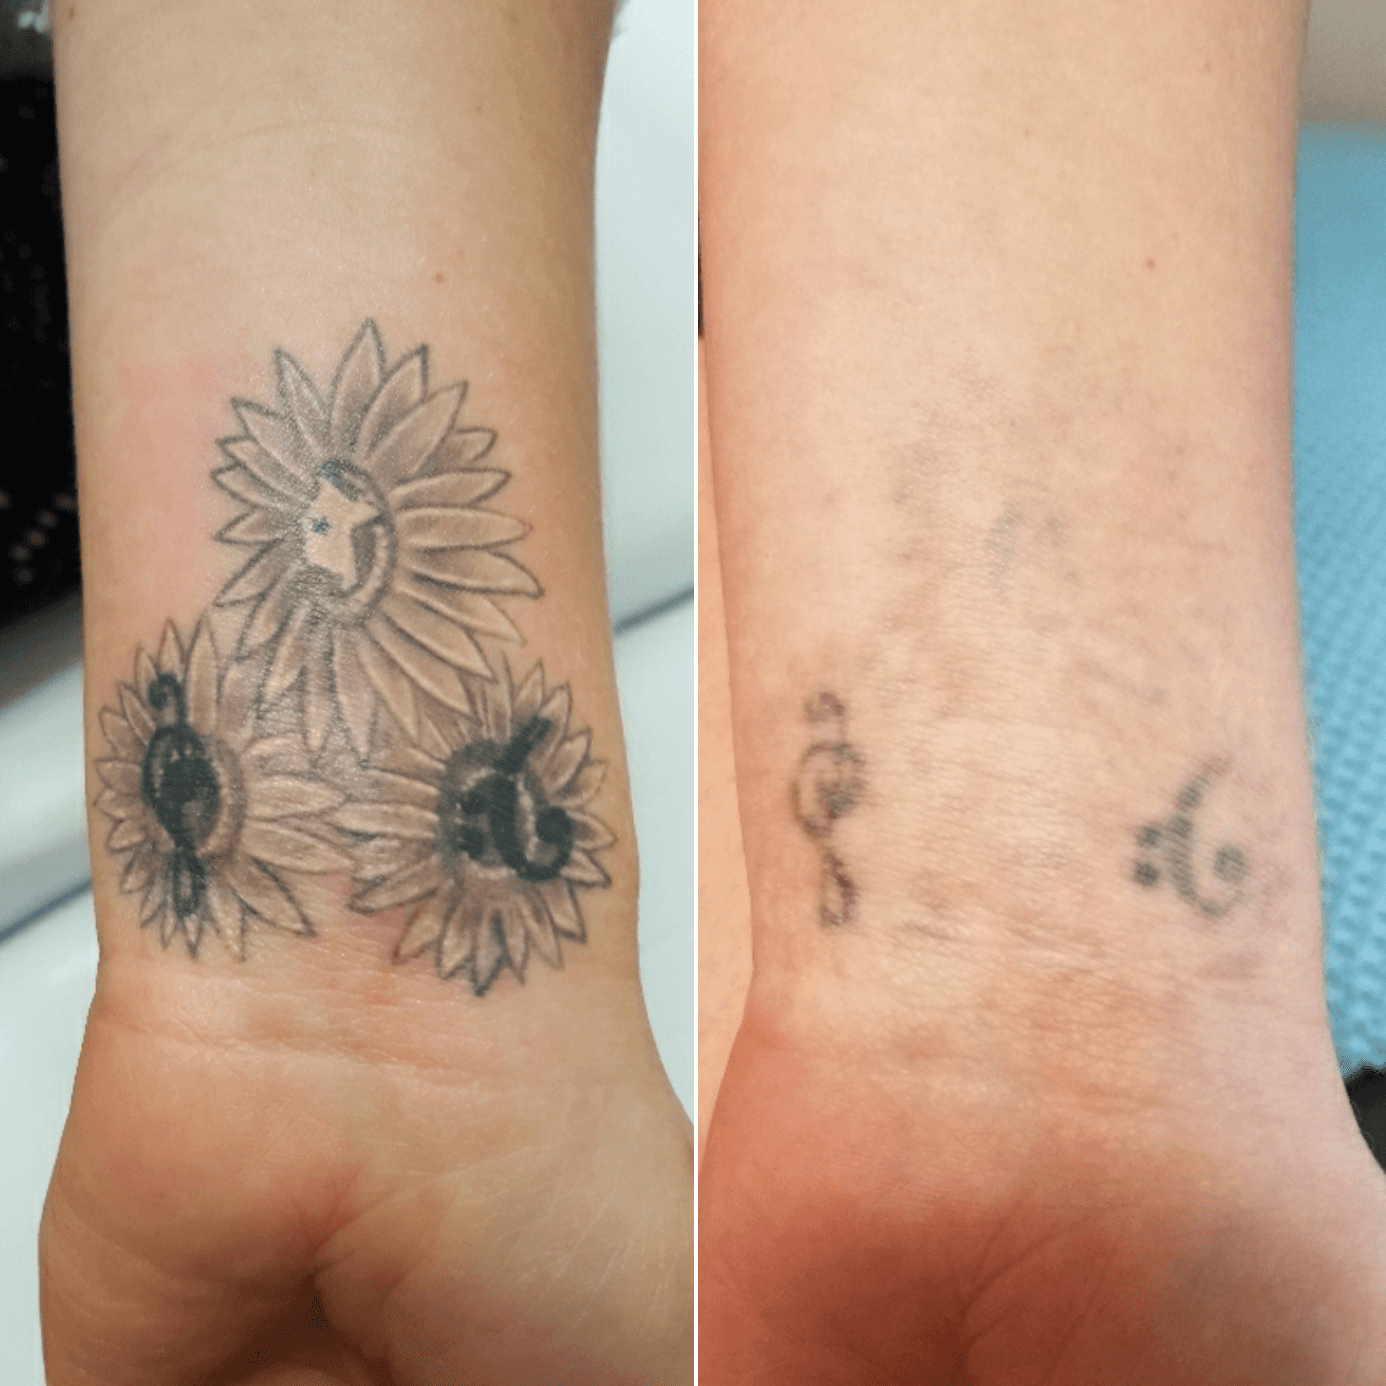 кожа после удаления тату лазером как выглядит